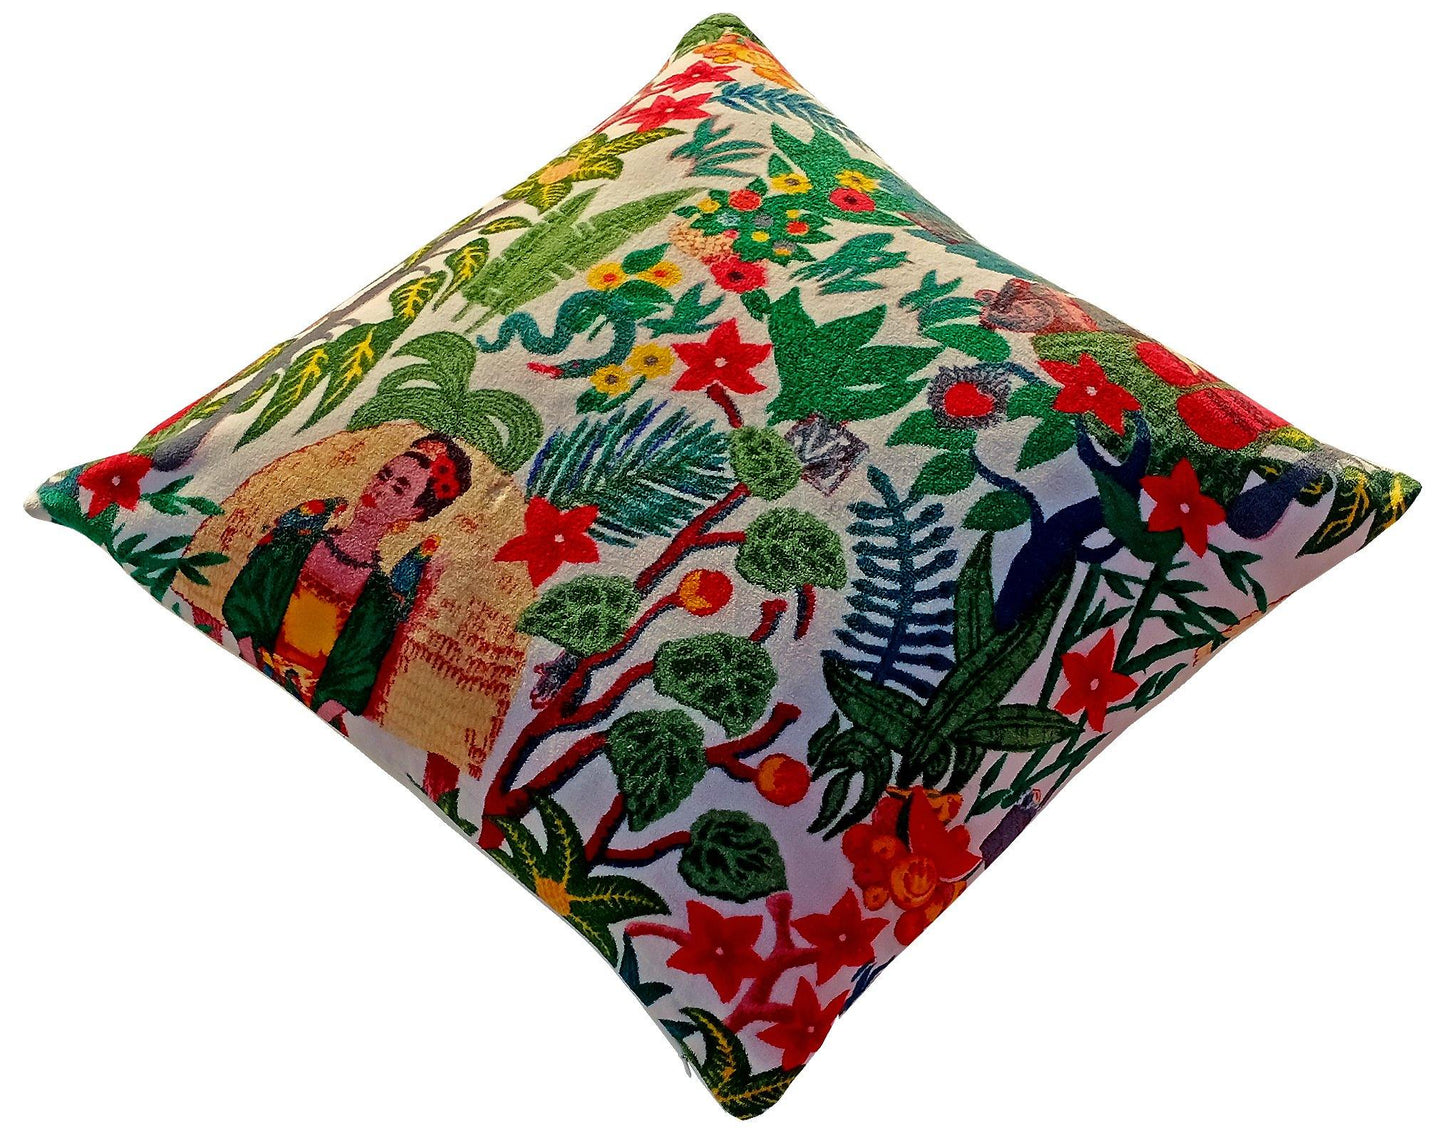 Frida Kahlo Velvet Cushion Cover- White - The Teal Thread